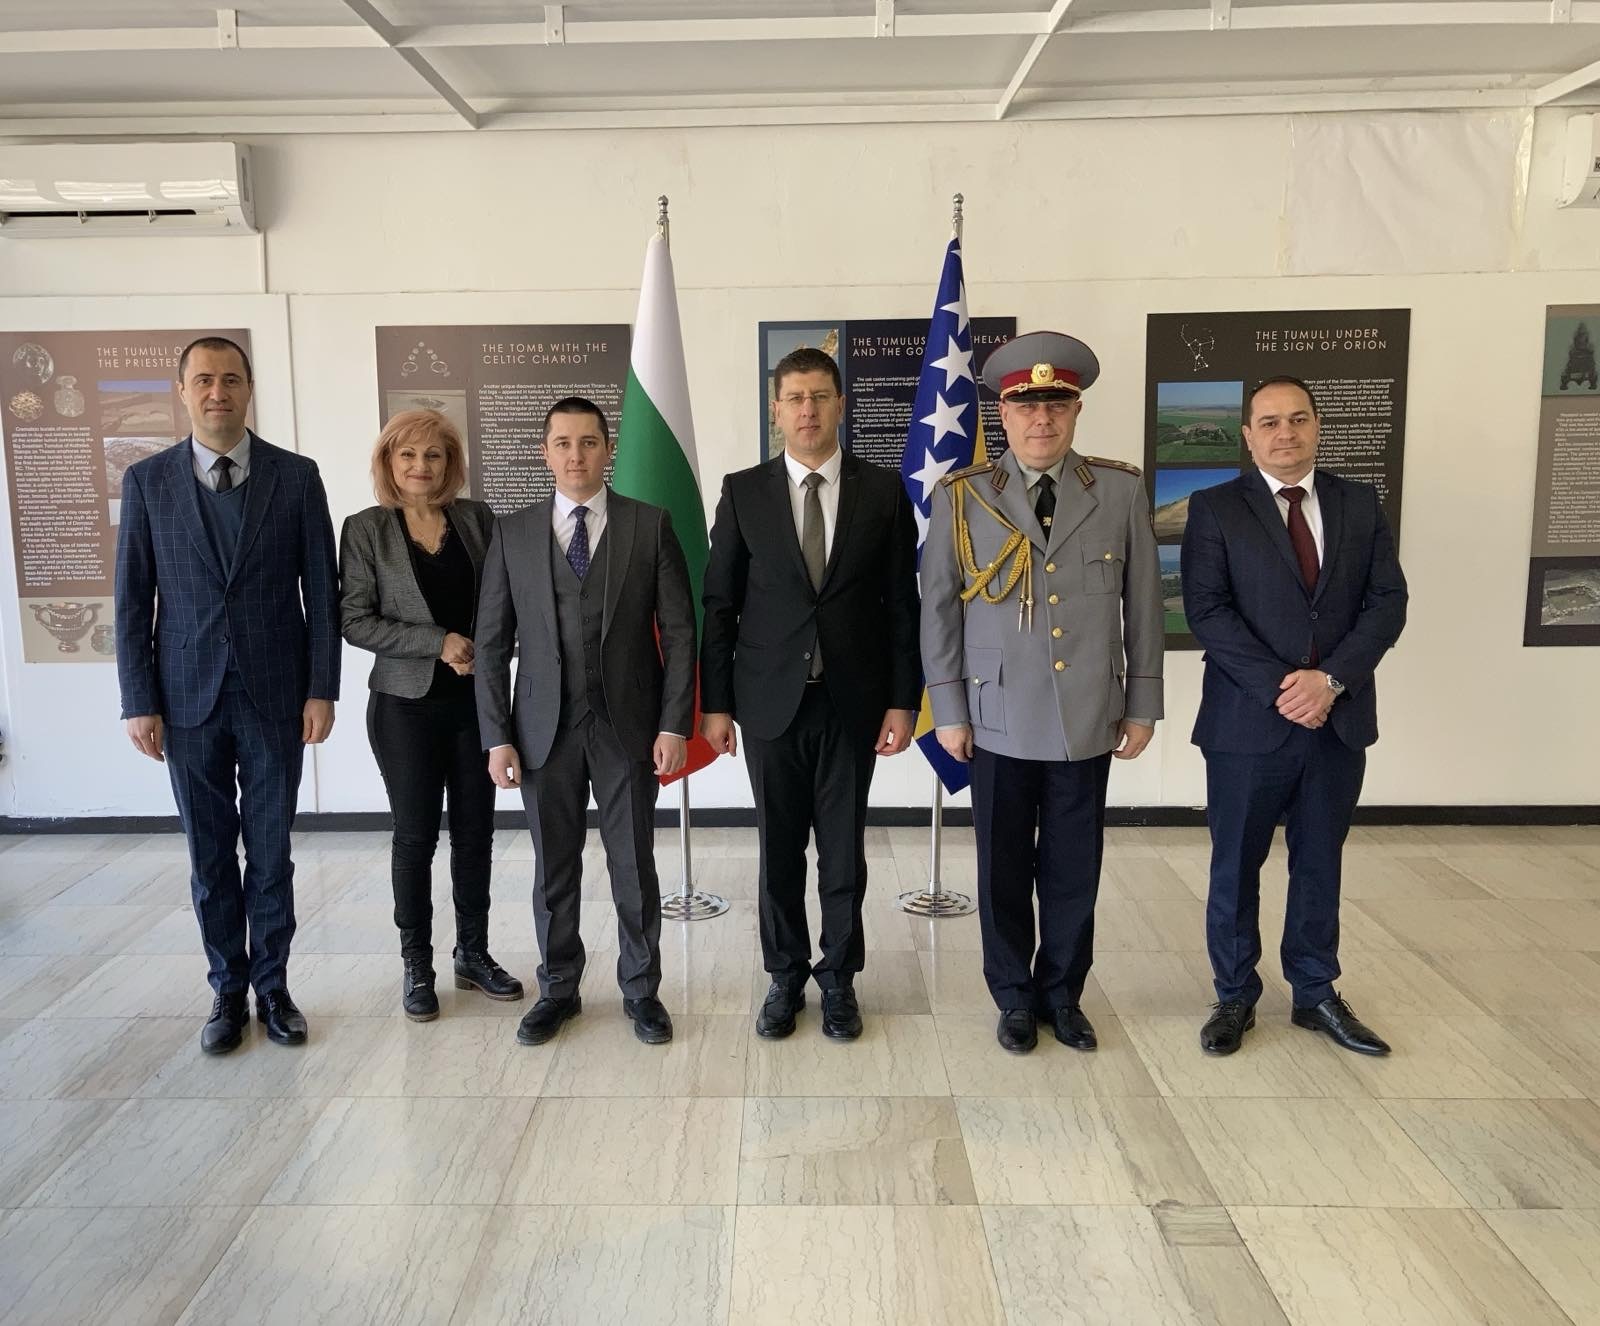 Oткриване на изложба на Държавния културен институт по повод Националния празник на Република България в Сараево 